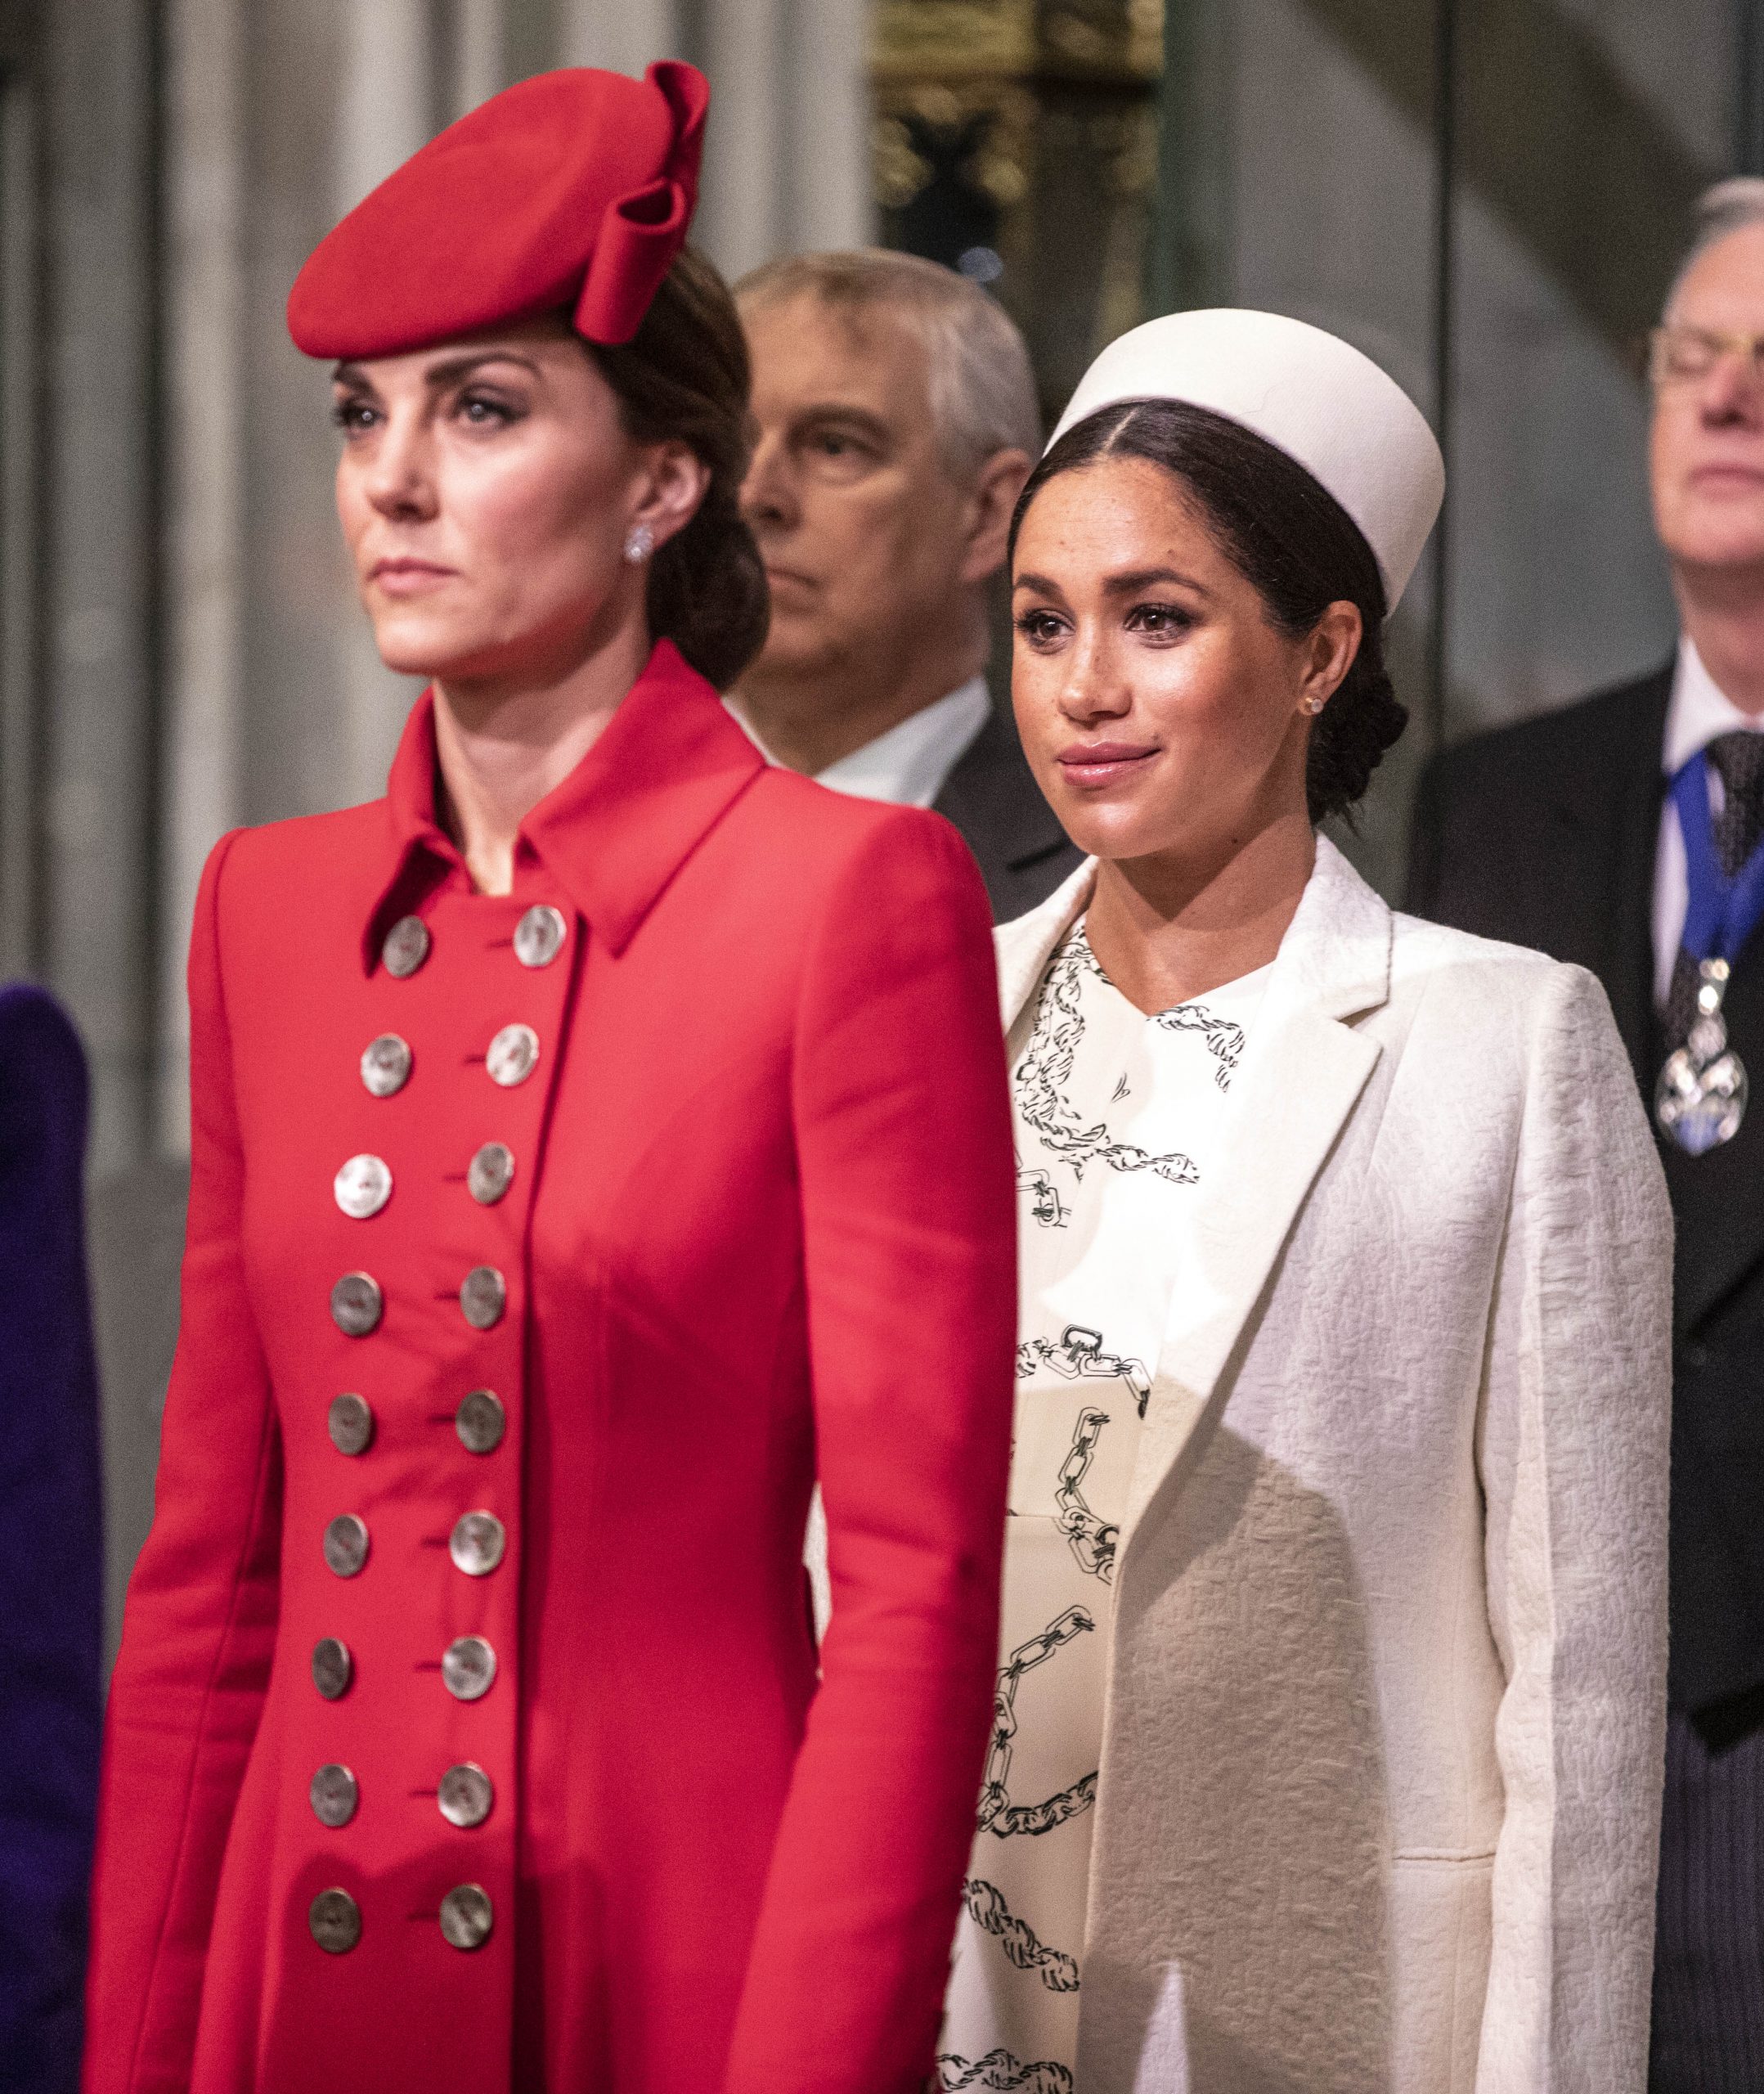 Kate Middleton și Meghan Markle, Commonwealth Day, 2019. Kate s-a îmbrăcat într-un palton roșu și a asortat look-ul cu o pălărie roșie. Meghan Markle s-a îmbrăcat în alb, era însărcinată cu primul copil, Archie